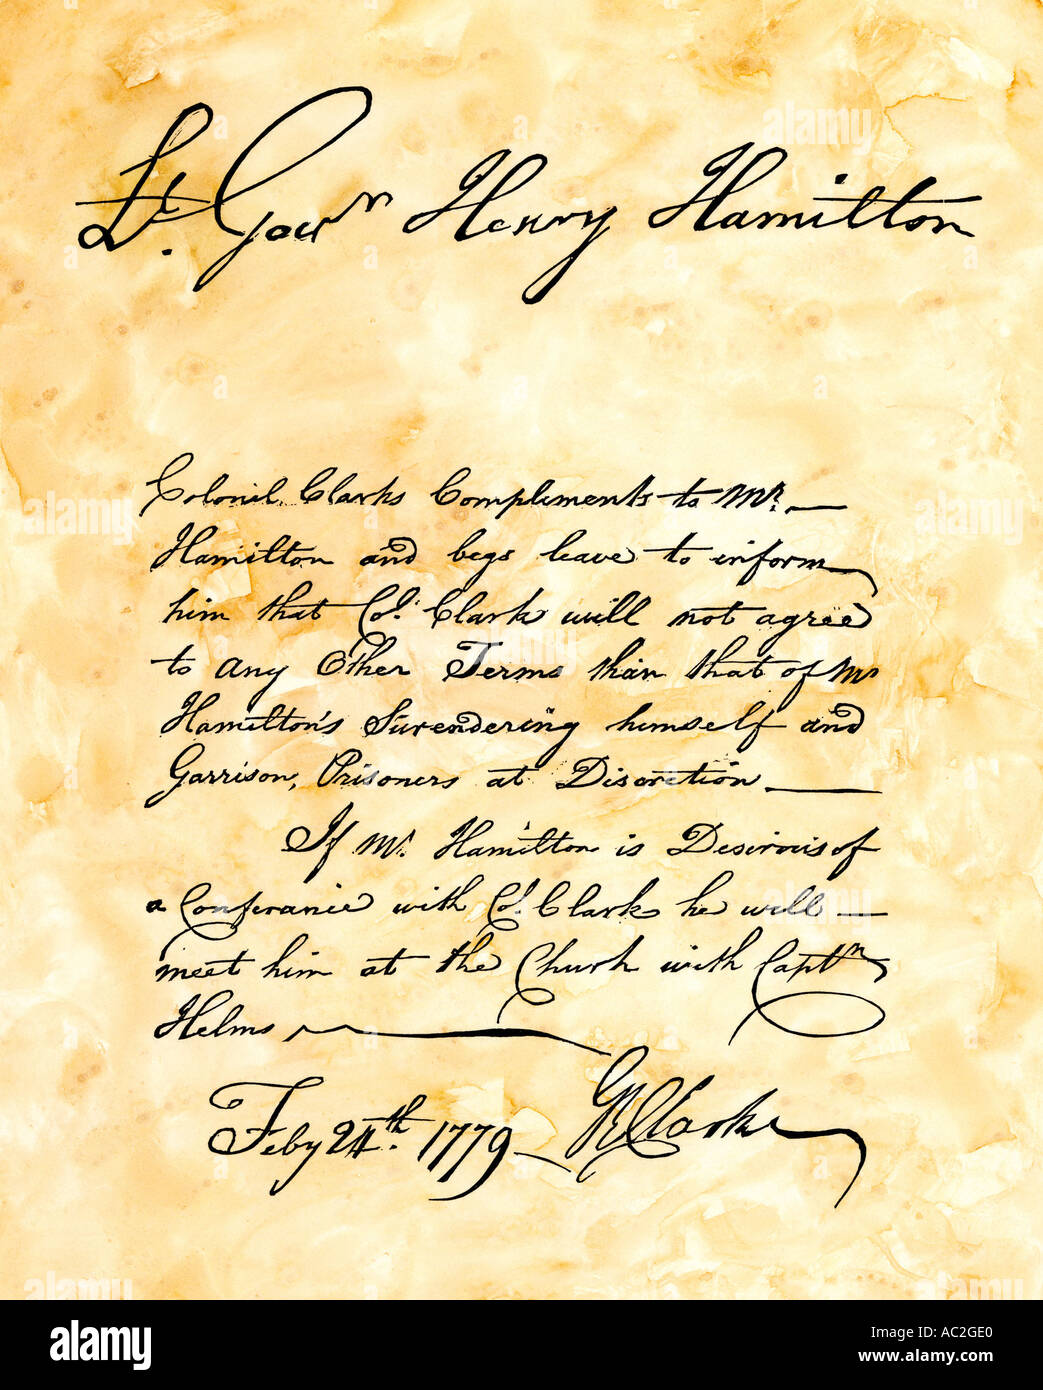 George Rogers Clark demande manuscrite pour l'abandon de Vincennes dans l'Indiana par British Lt Gouverneur Hamilton 1779. Gravure sur bois avec un lavage à l'aquarelle Banque D'Images